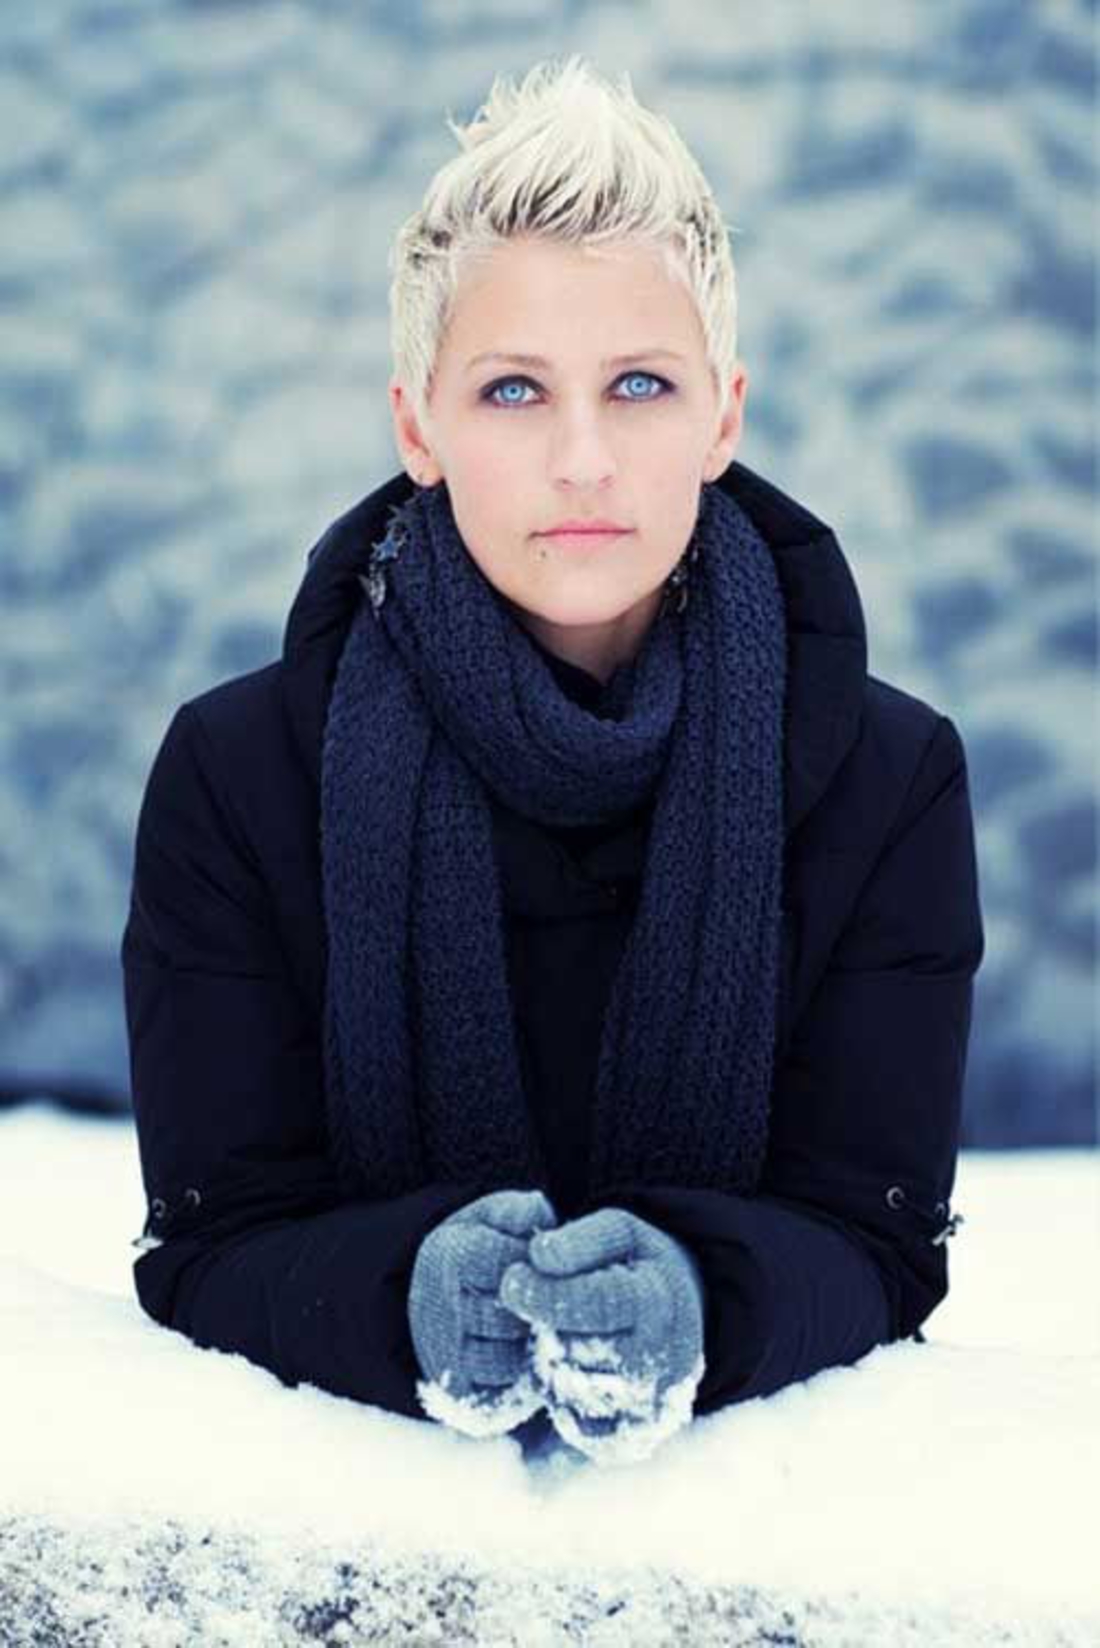 Cheveux blonds en hiver avec beaucoup de neige, shortchair undercut vêtements chauds bleus